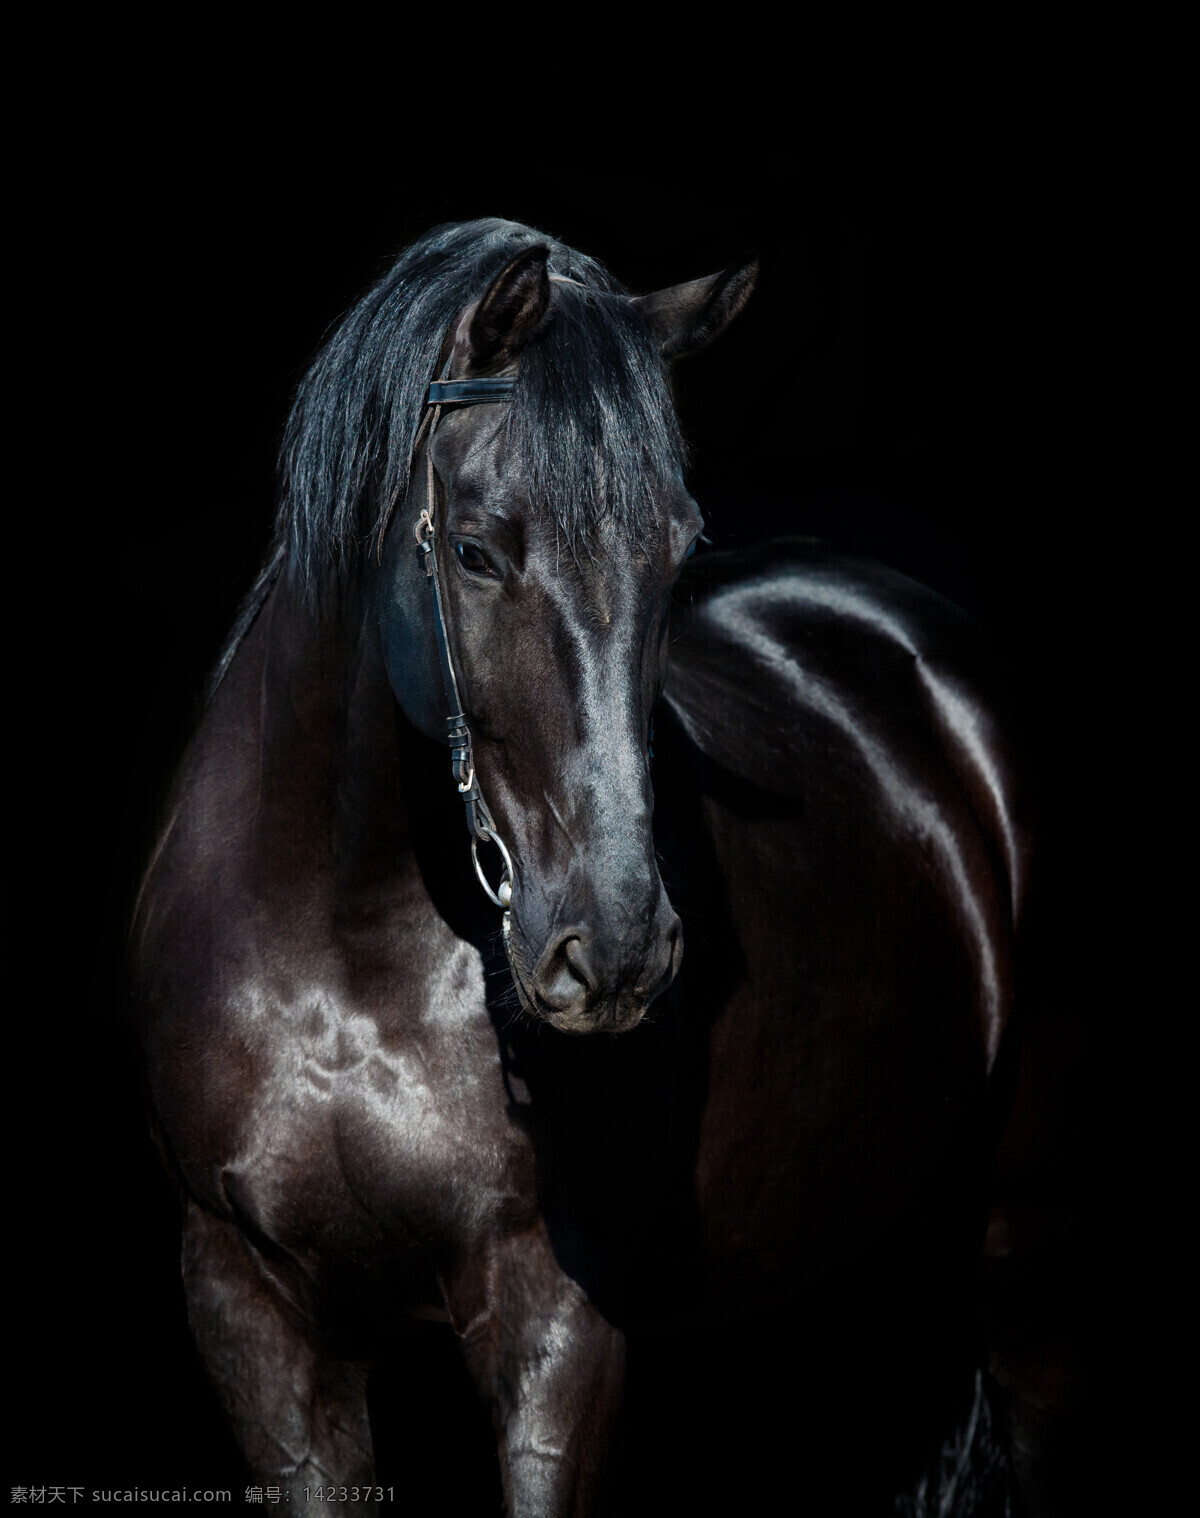 黑色 骏马 驰骋 奔跑 马 马匹 动物摄影 动物世界 陆地动物 生物世界